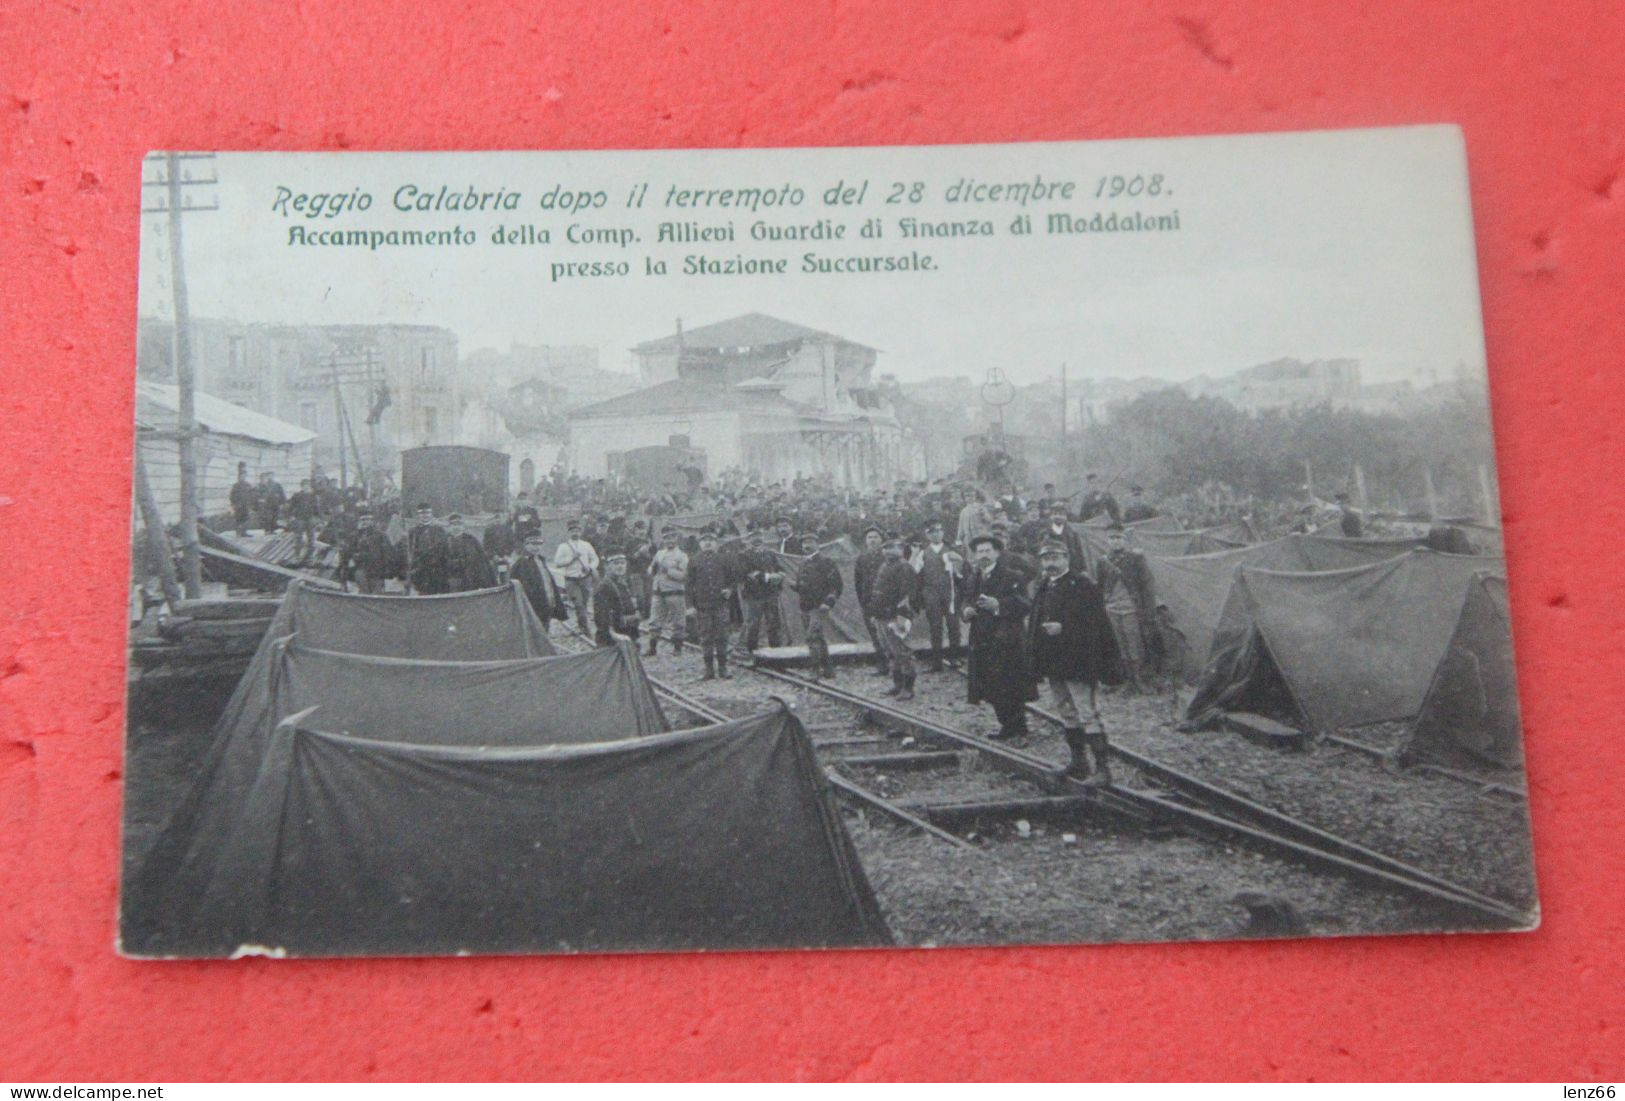 Reggio Calabria La Stazione Succursale Con Accampamento Guardie Di Finanza Dopo Il Terremoto 1909 - Reggio Calabria